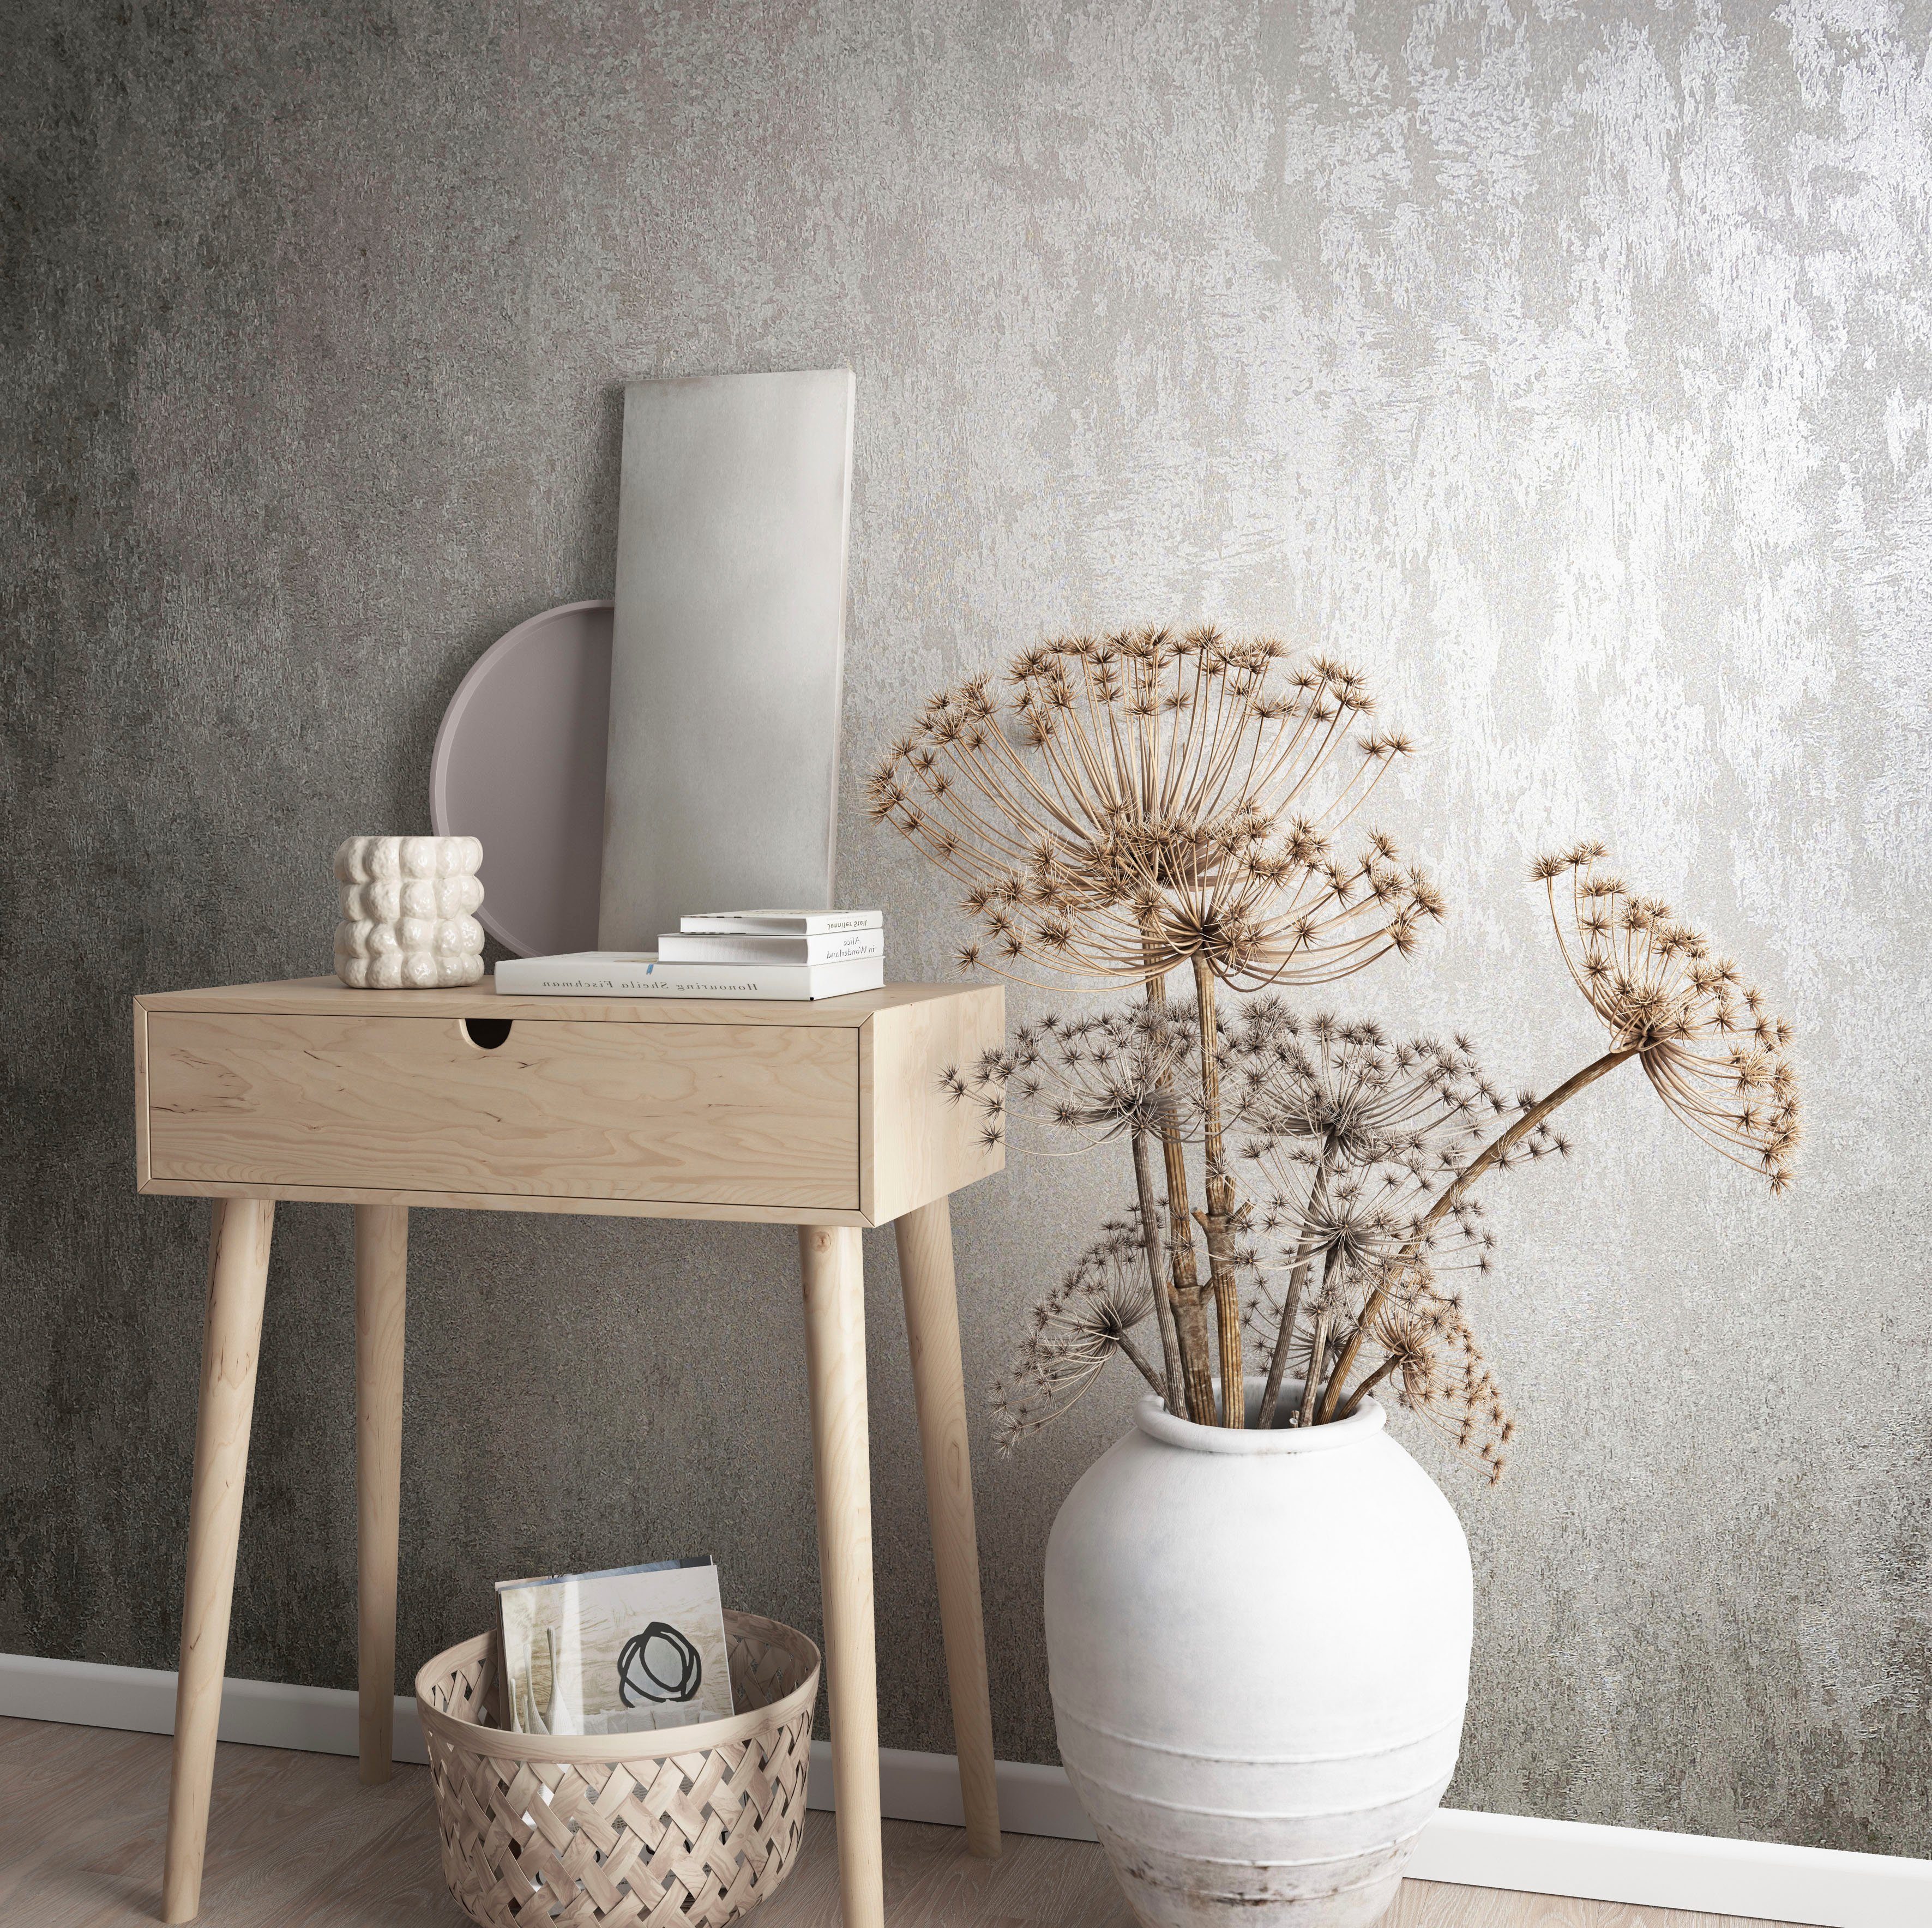 Vliestapete moderne grau-braun glänzend, Vliestapete Concrete, für strukturiert, Wohnzimmer Marburg Schlafzimmer Küche